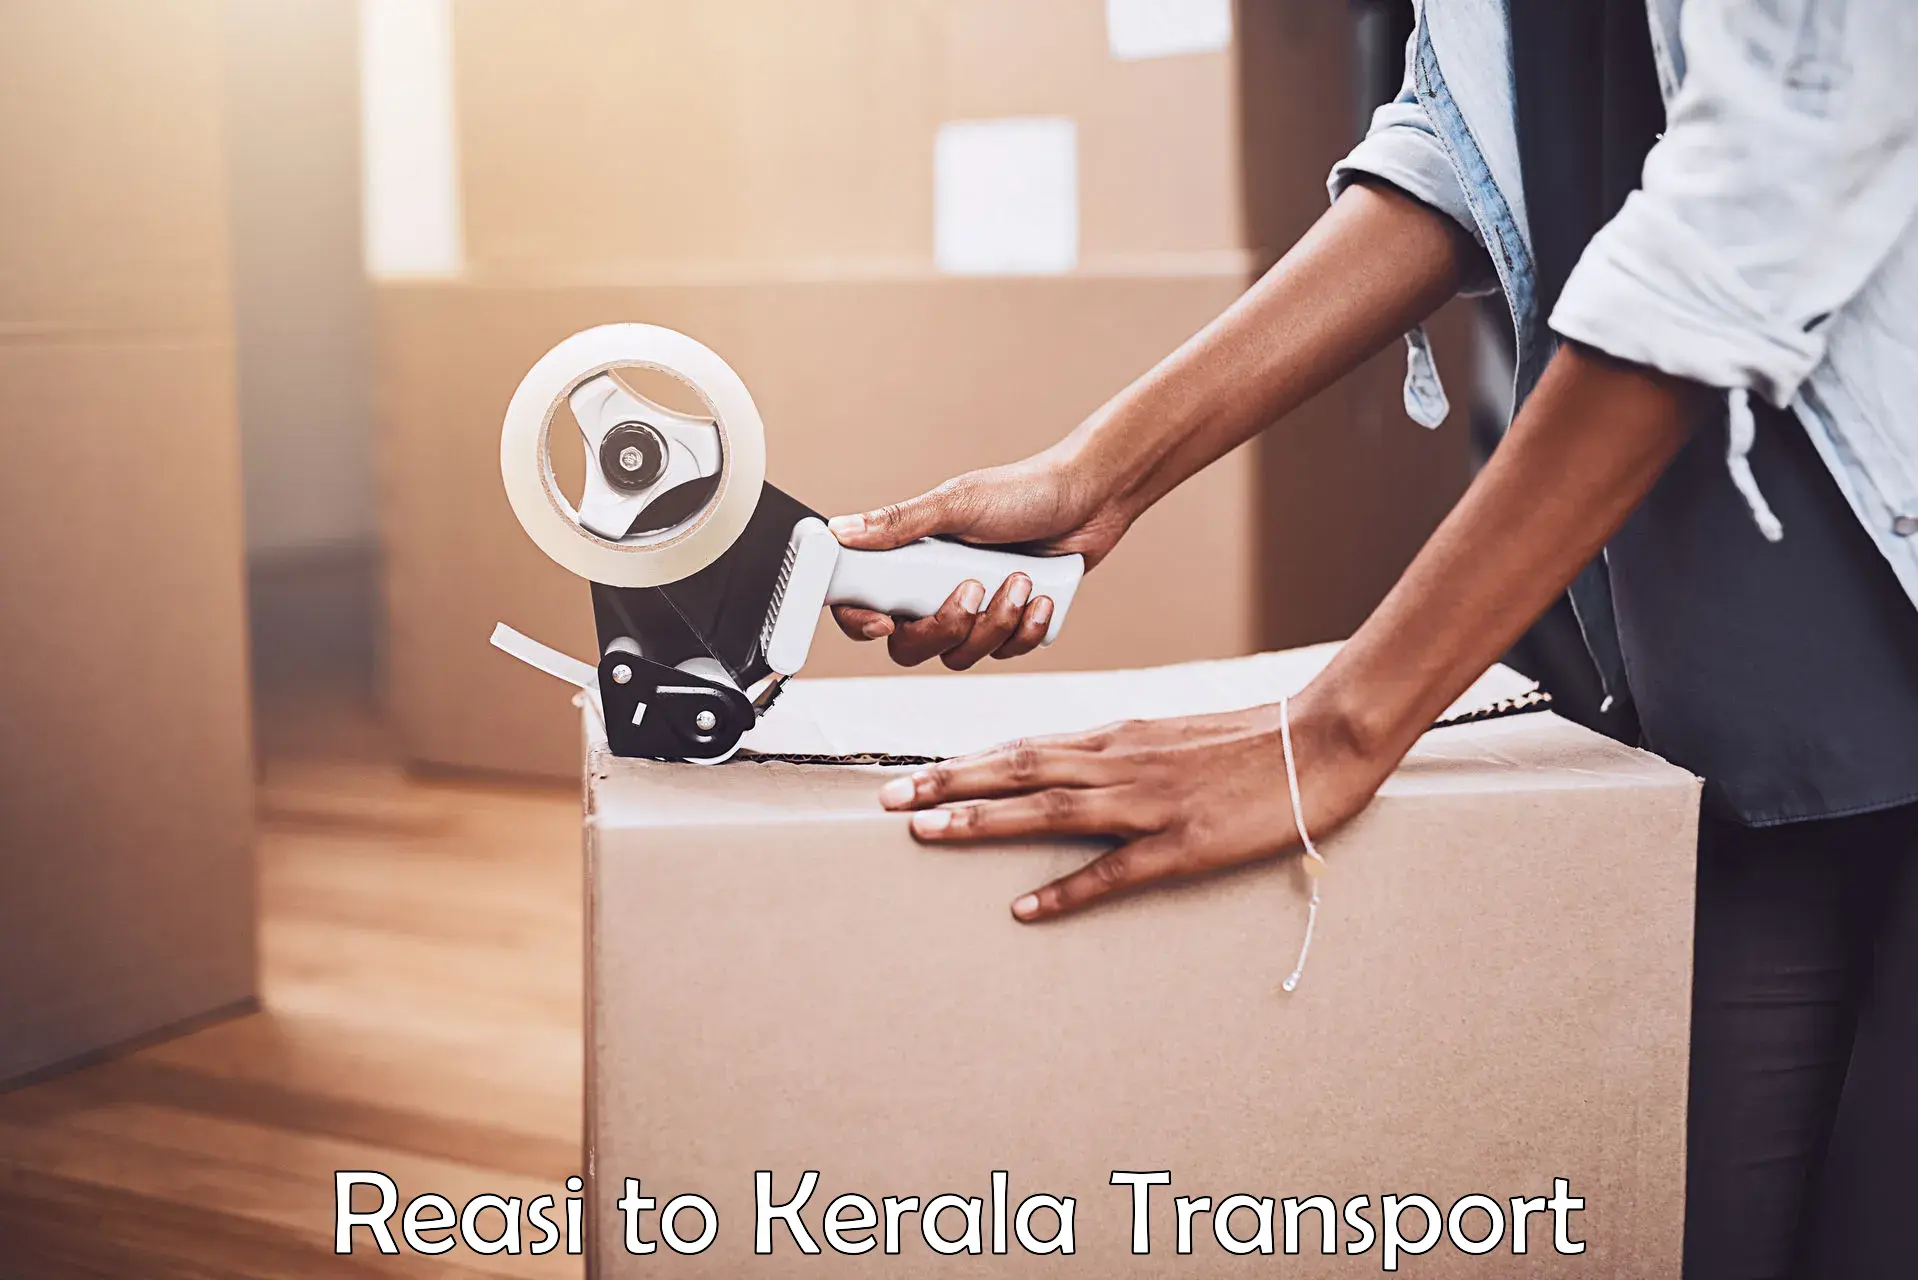 Online transport service Reasi to Akaloor